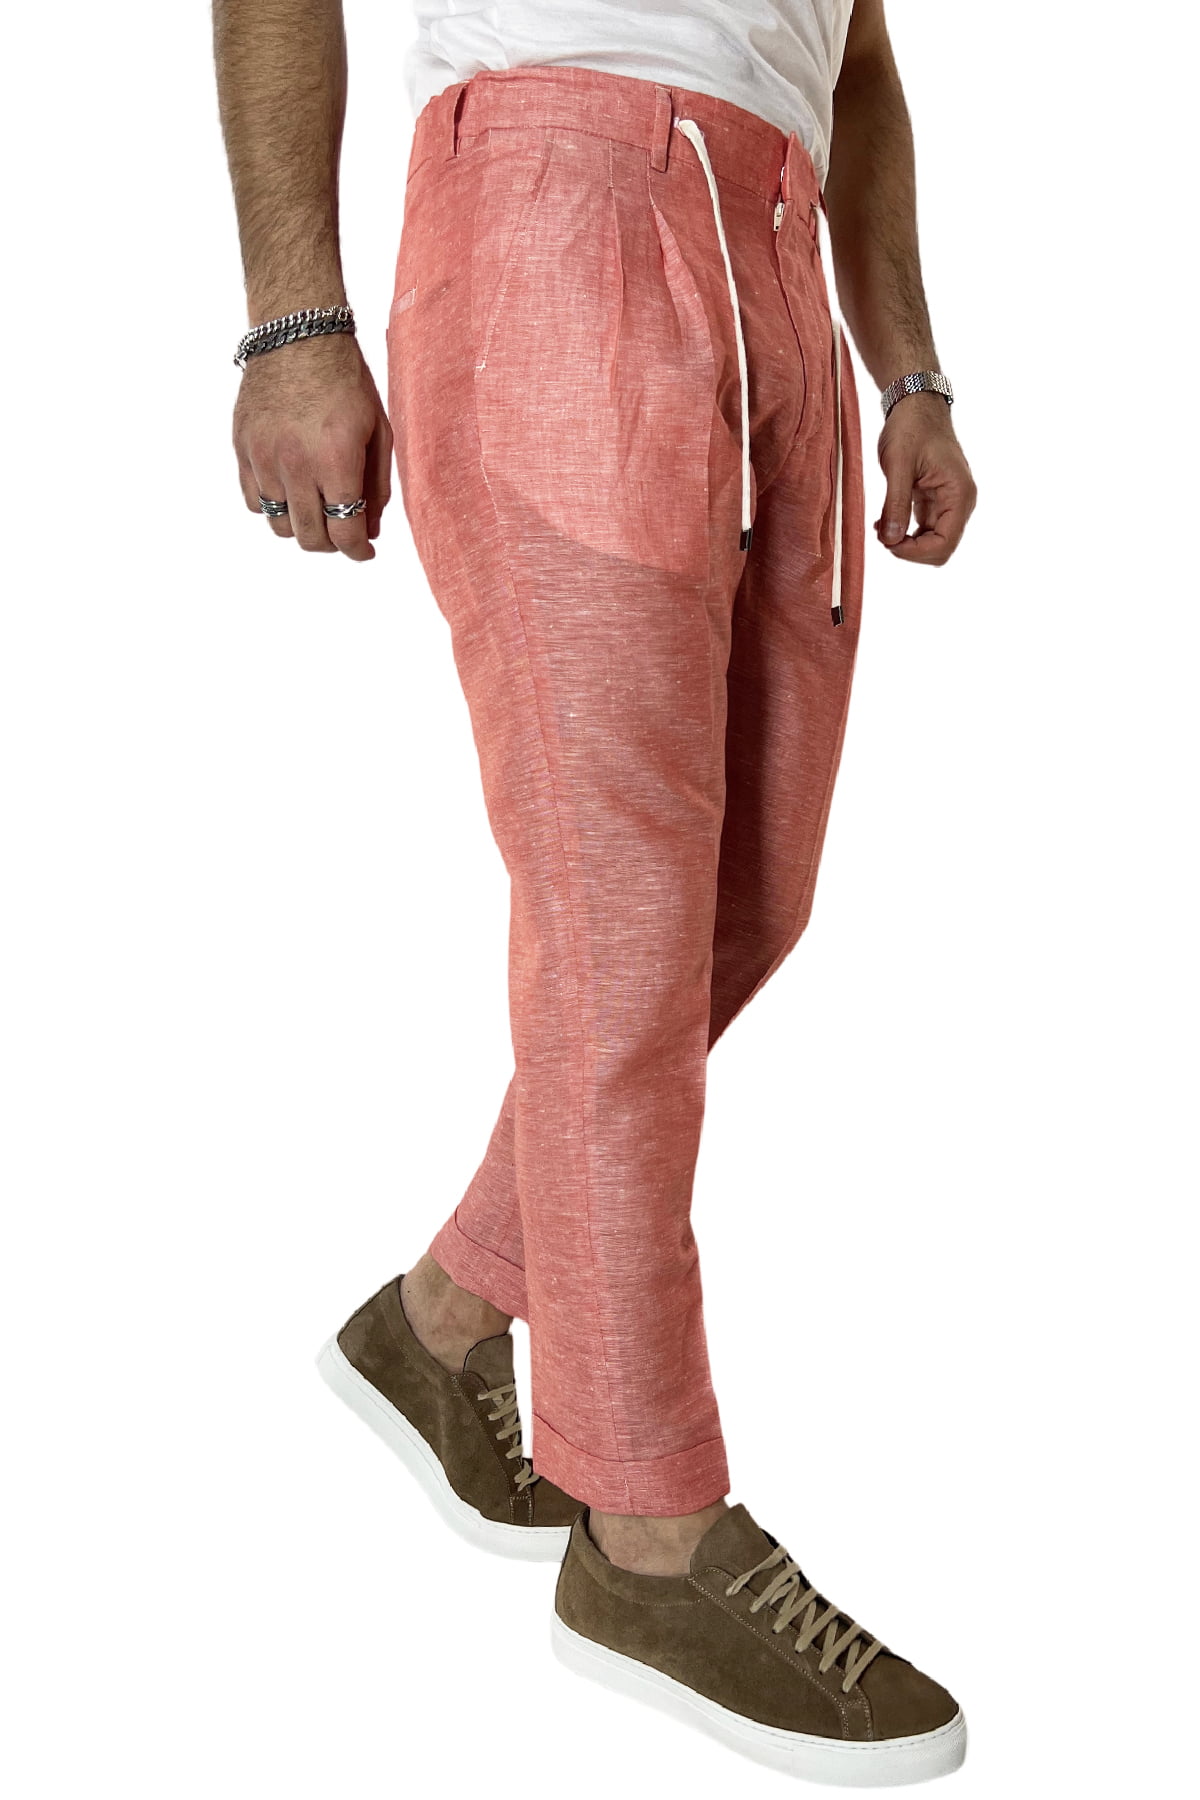 Pantalaccio uomo arancio in lino e cotone tasca america con doppia pence e laccio in vita risvolto 4cm